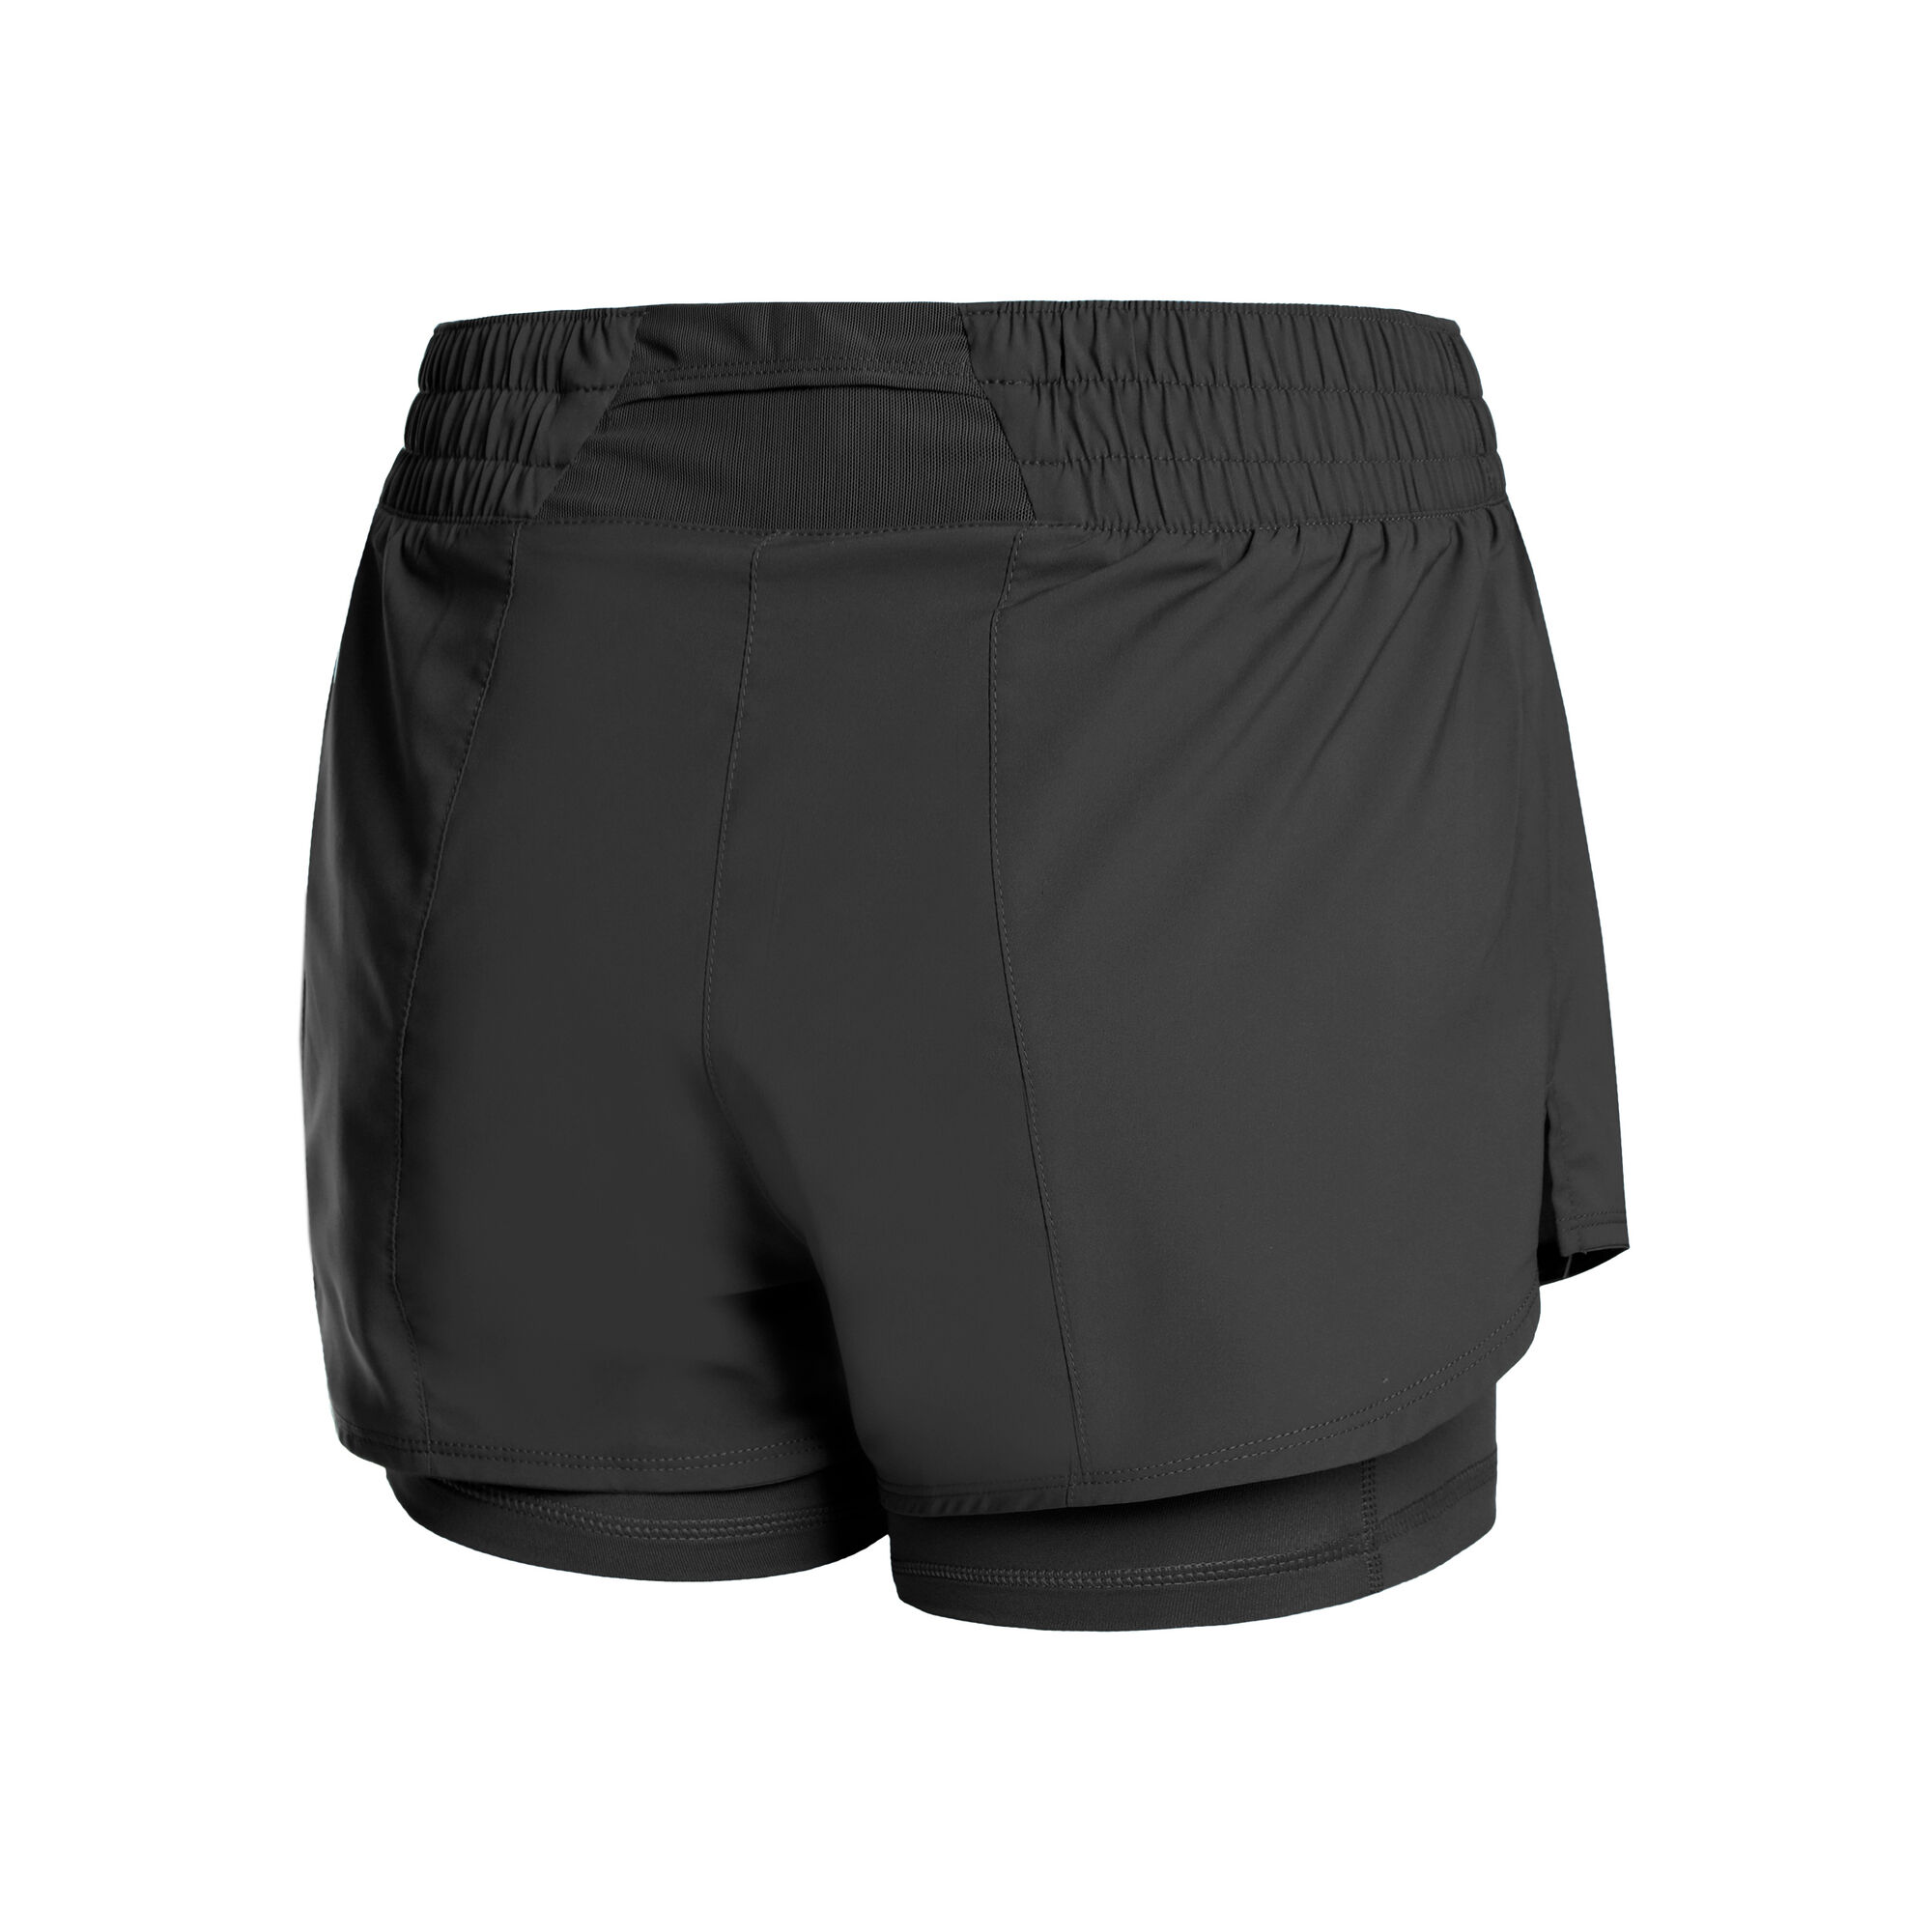 Nike Dri-Fit One MR 2in1 Shorts Damen Schwarz online kaufen | Tennis Point  DE